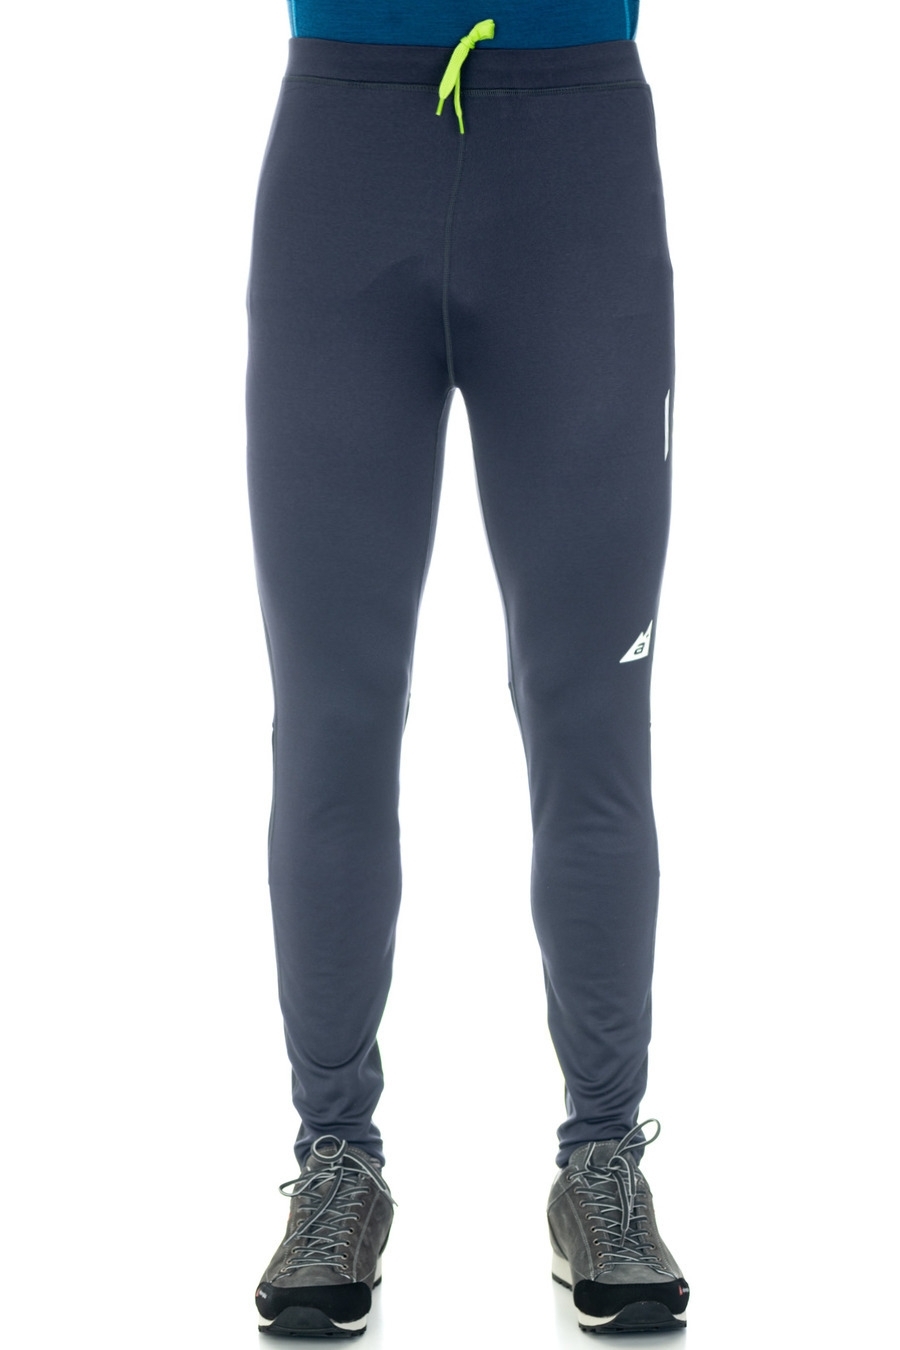 Men's SPORT Thermal Leggings - Men's Sweatpants & Trousers - New